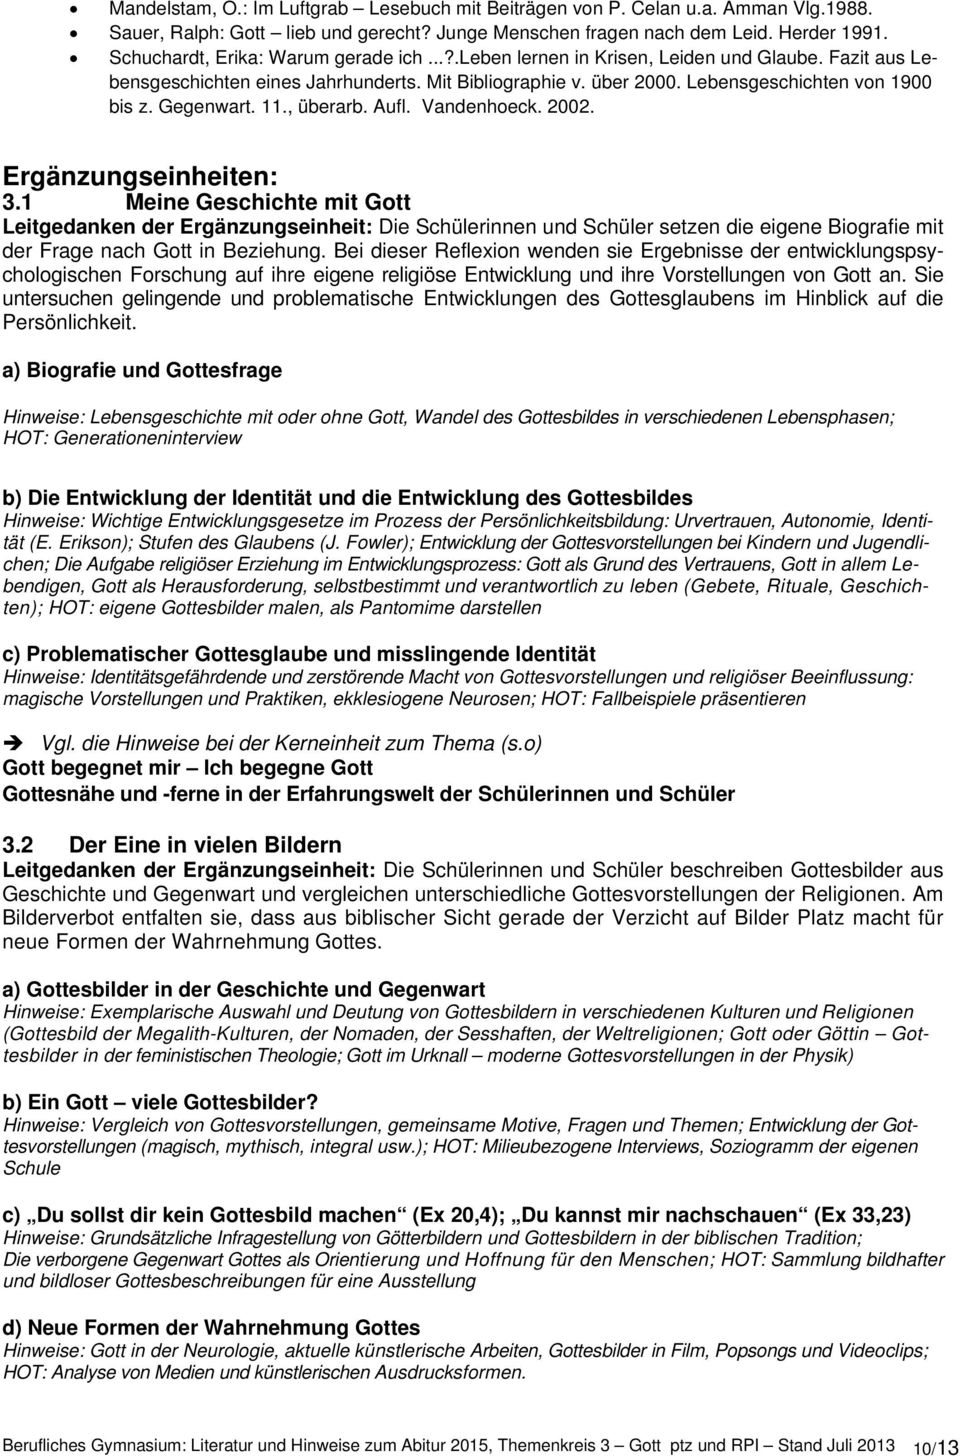 Gegenwart. 11., überarb. Aufl. Vandenhoeck. 2002. Ergänzungseinheiten: 3.